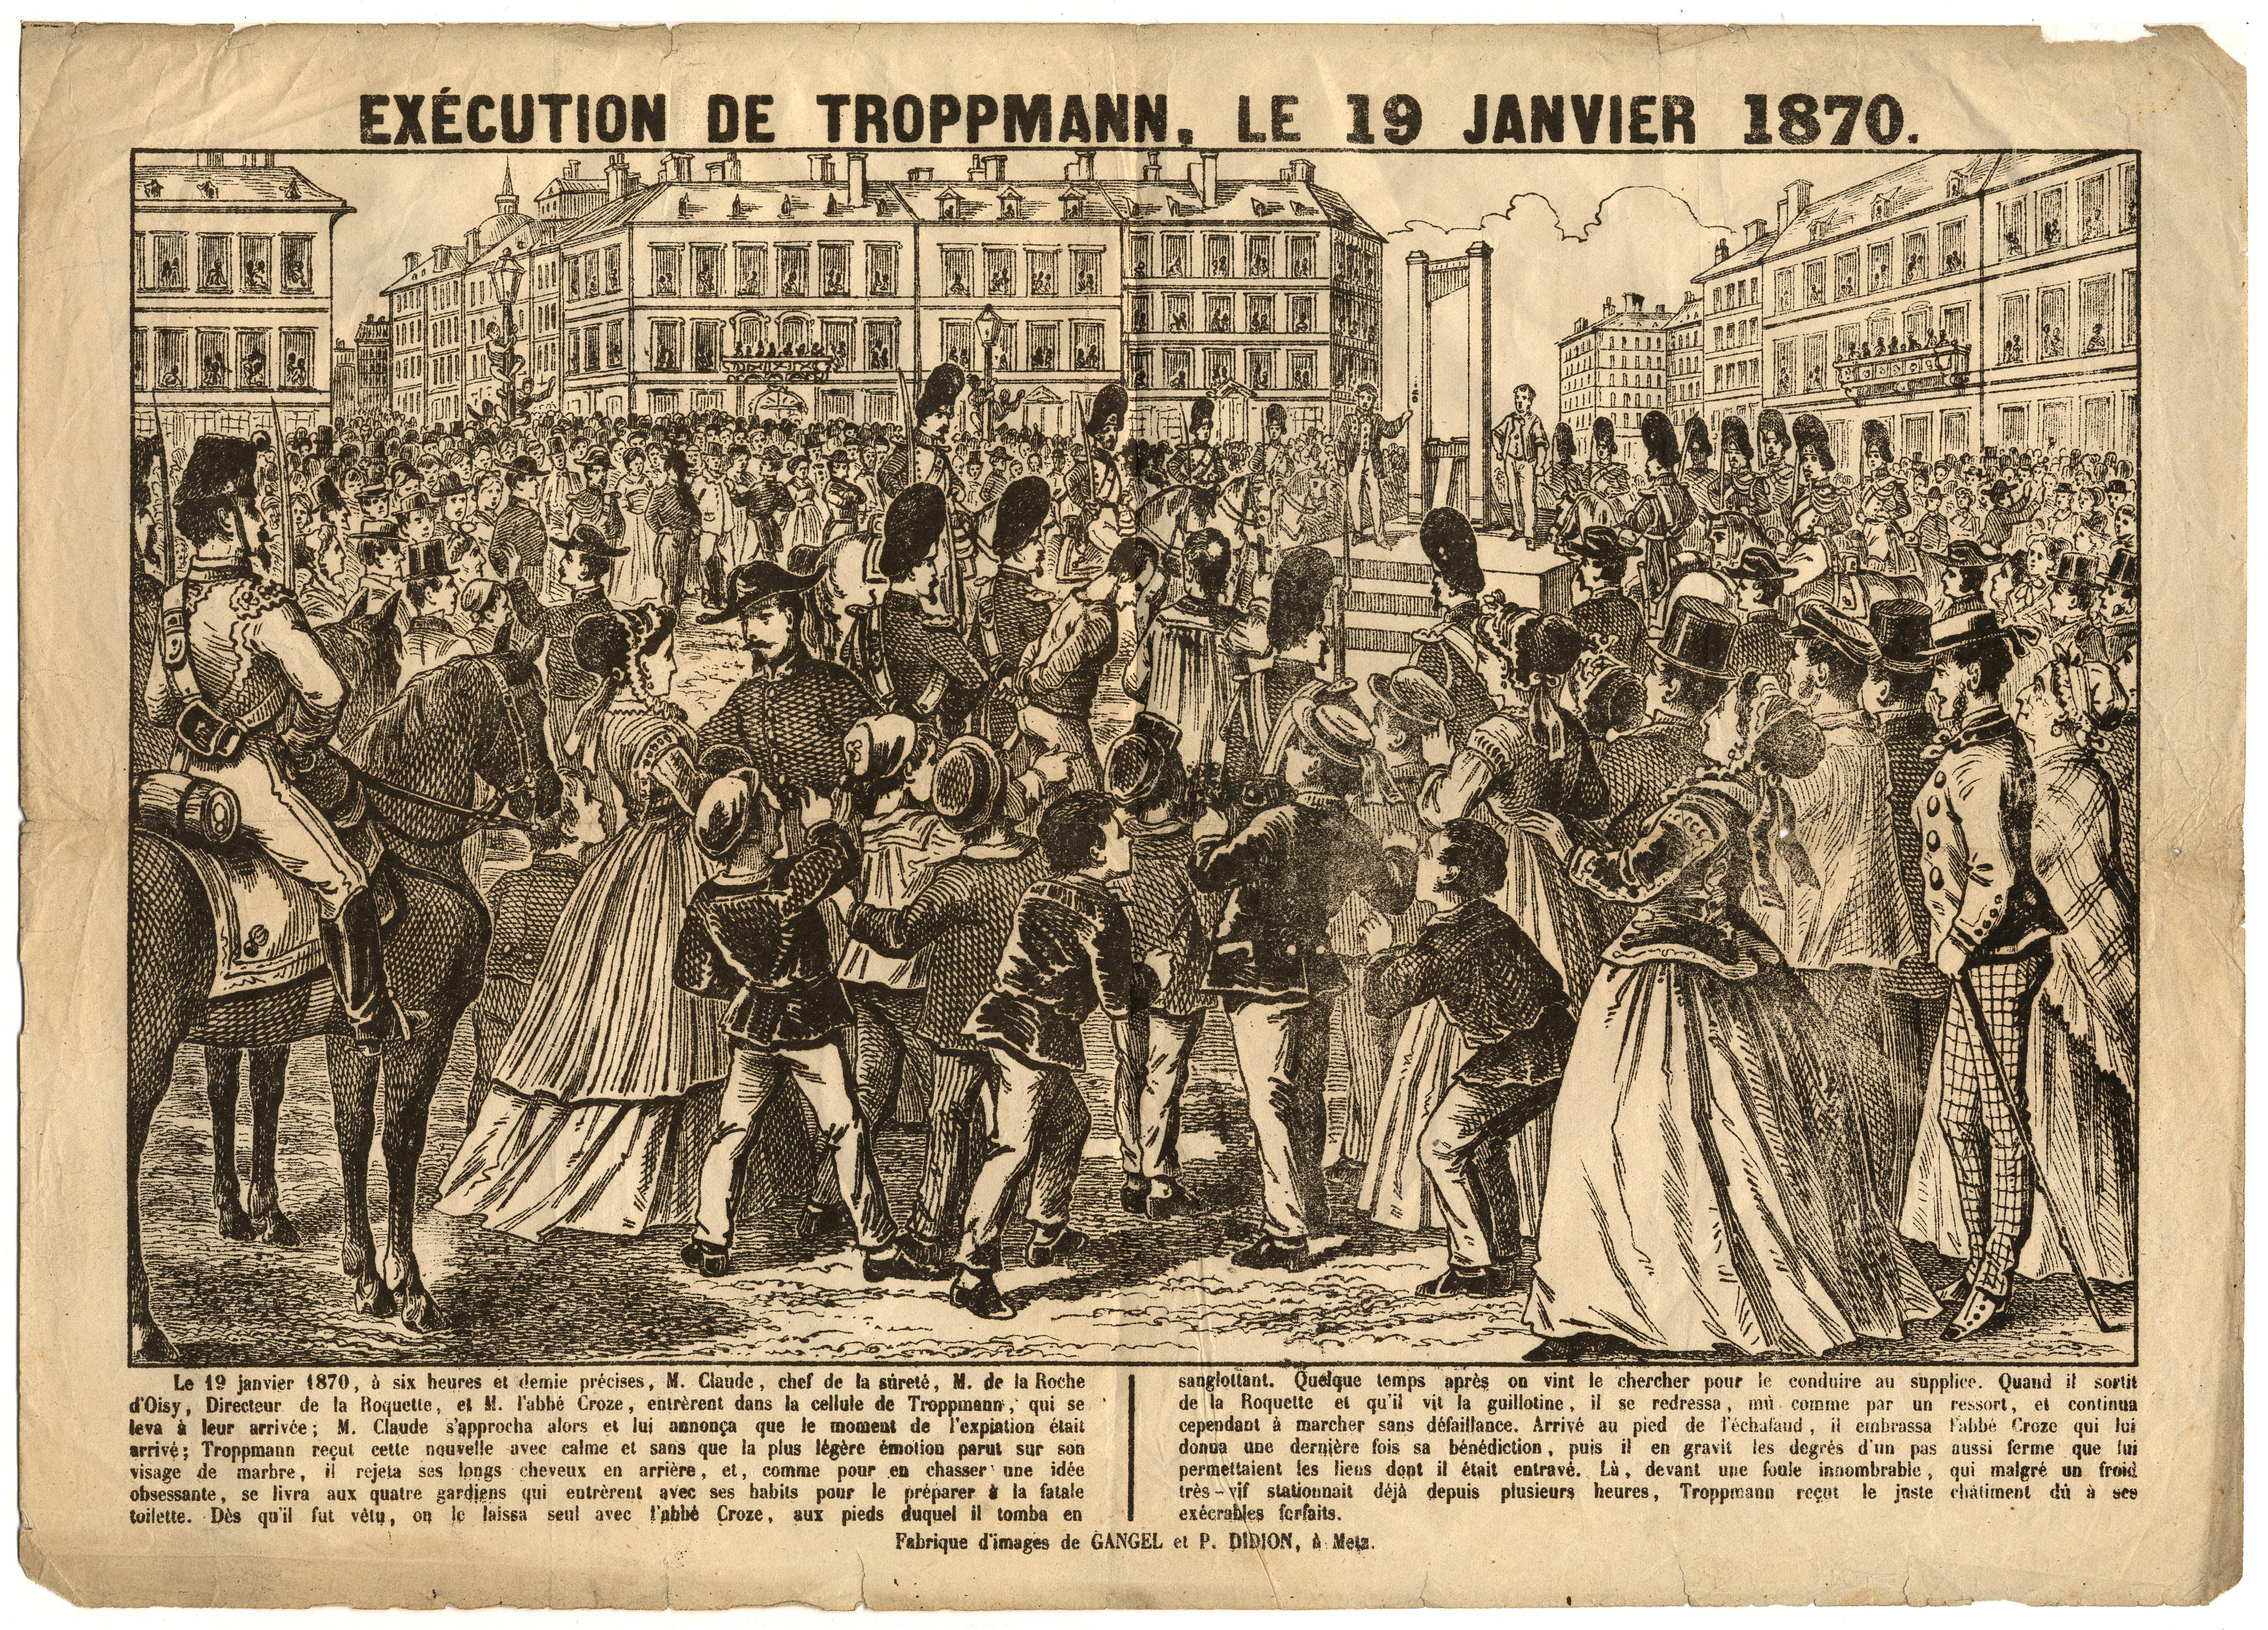 Contenu du Exécution de Troppmann le 18 janvier 1870